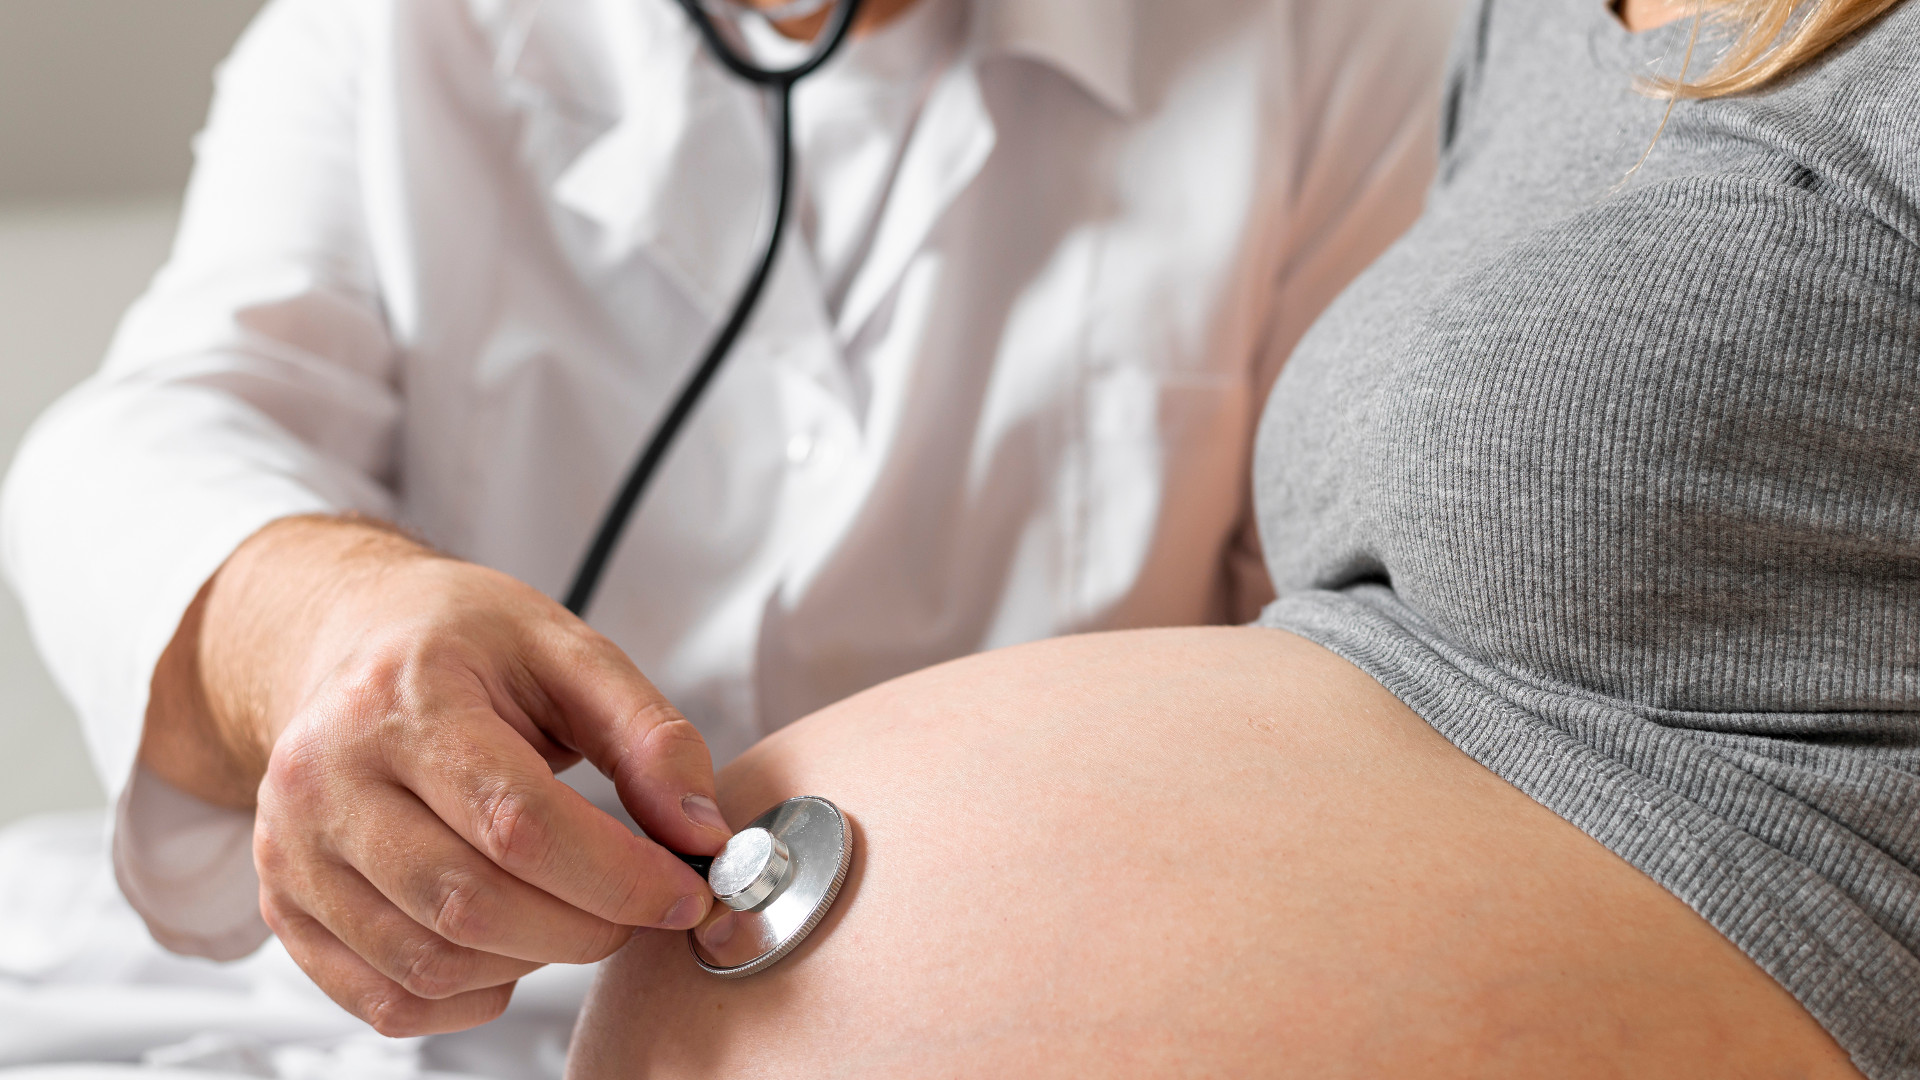 Foto de capa do artigo "DIU depois da gravidez: interfere na amamentação? É seguro?"